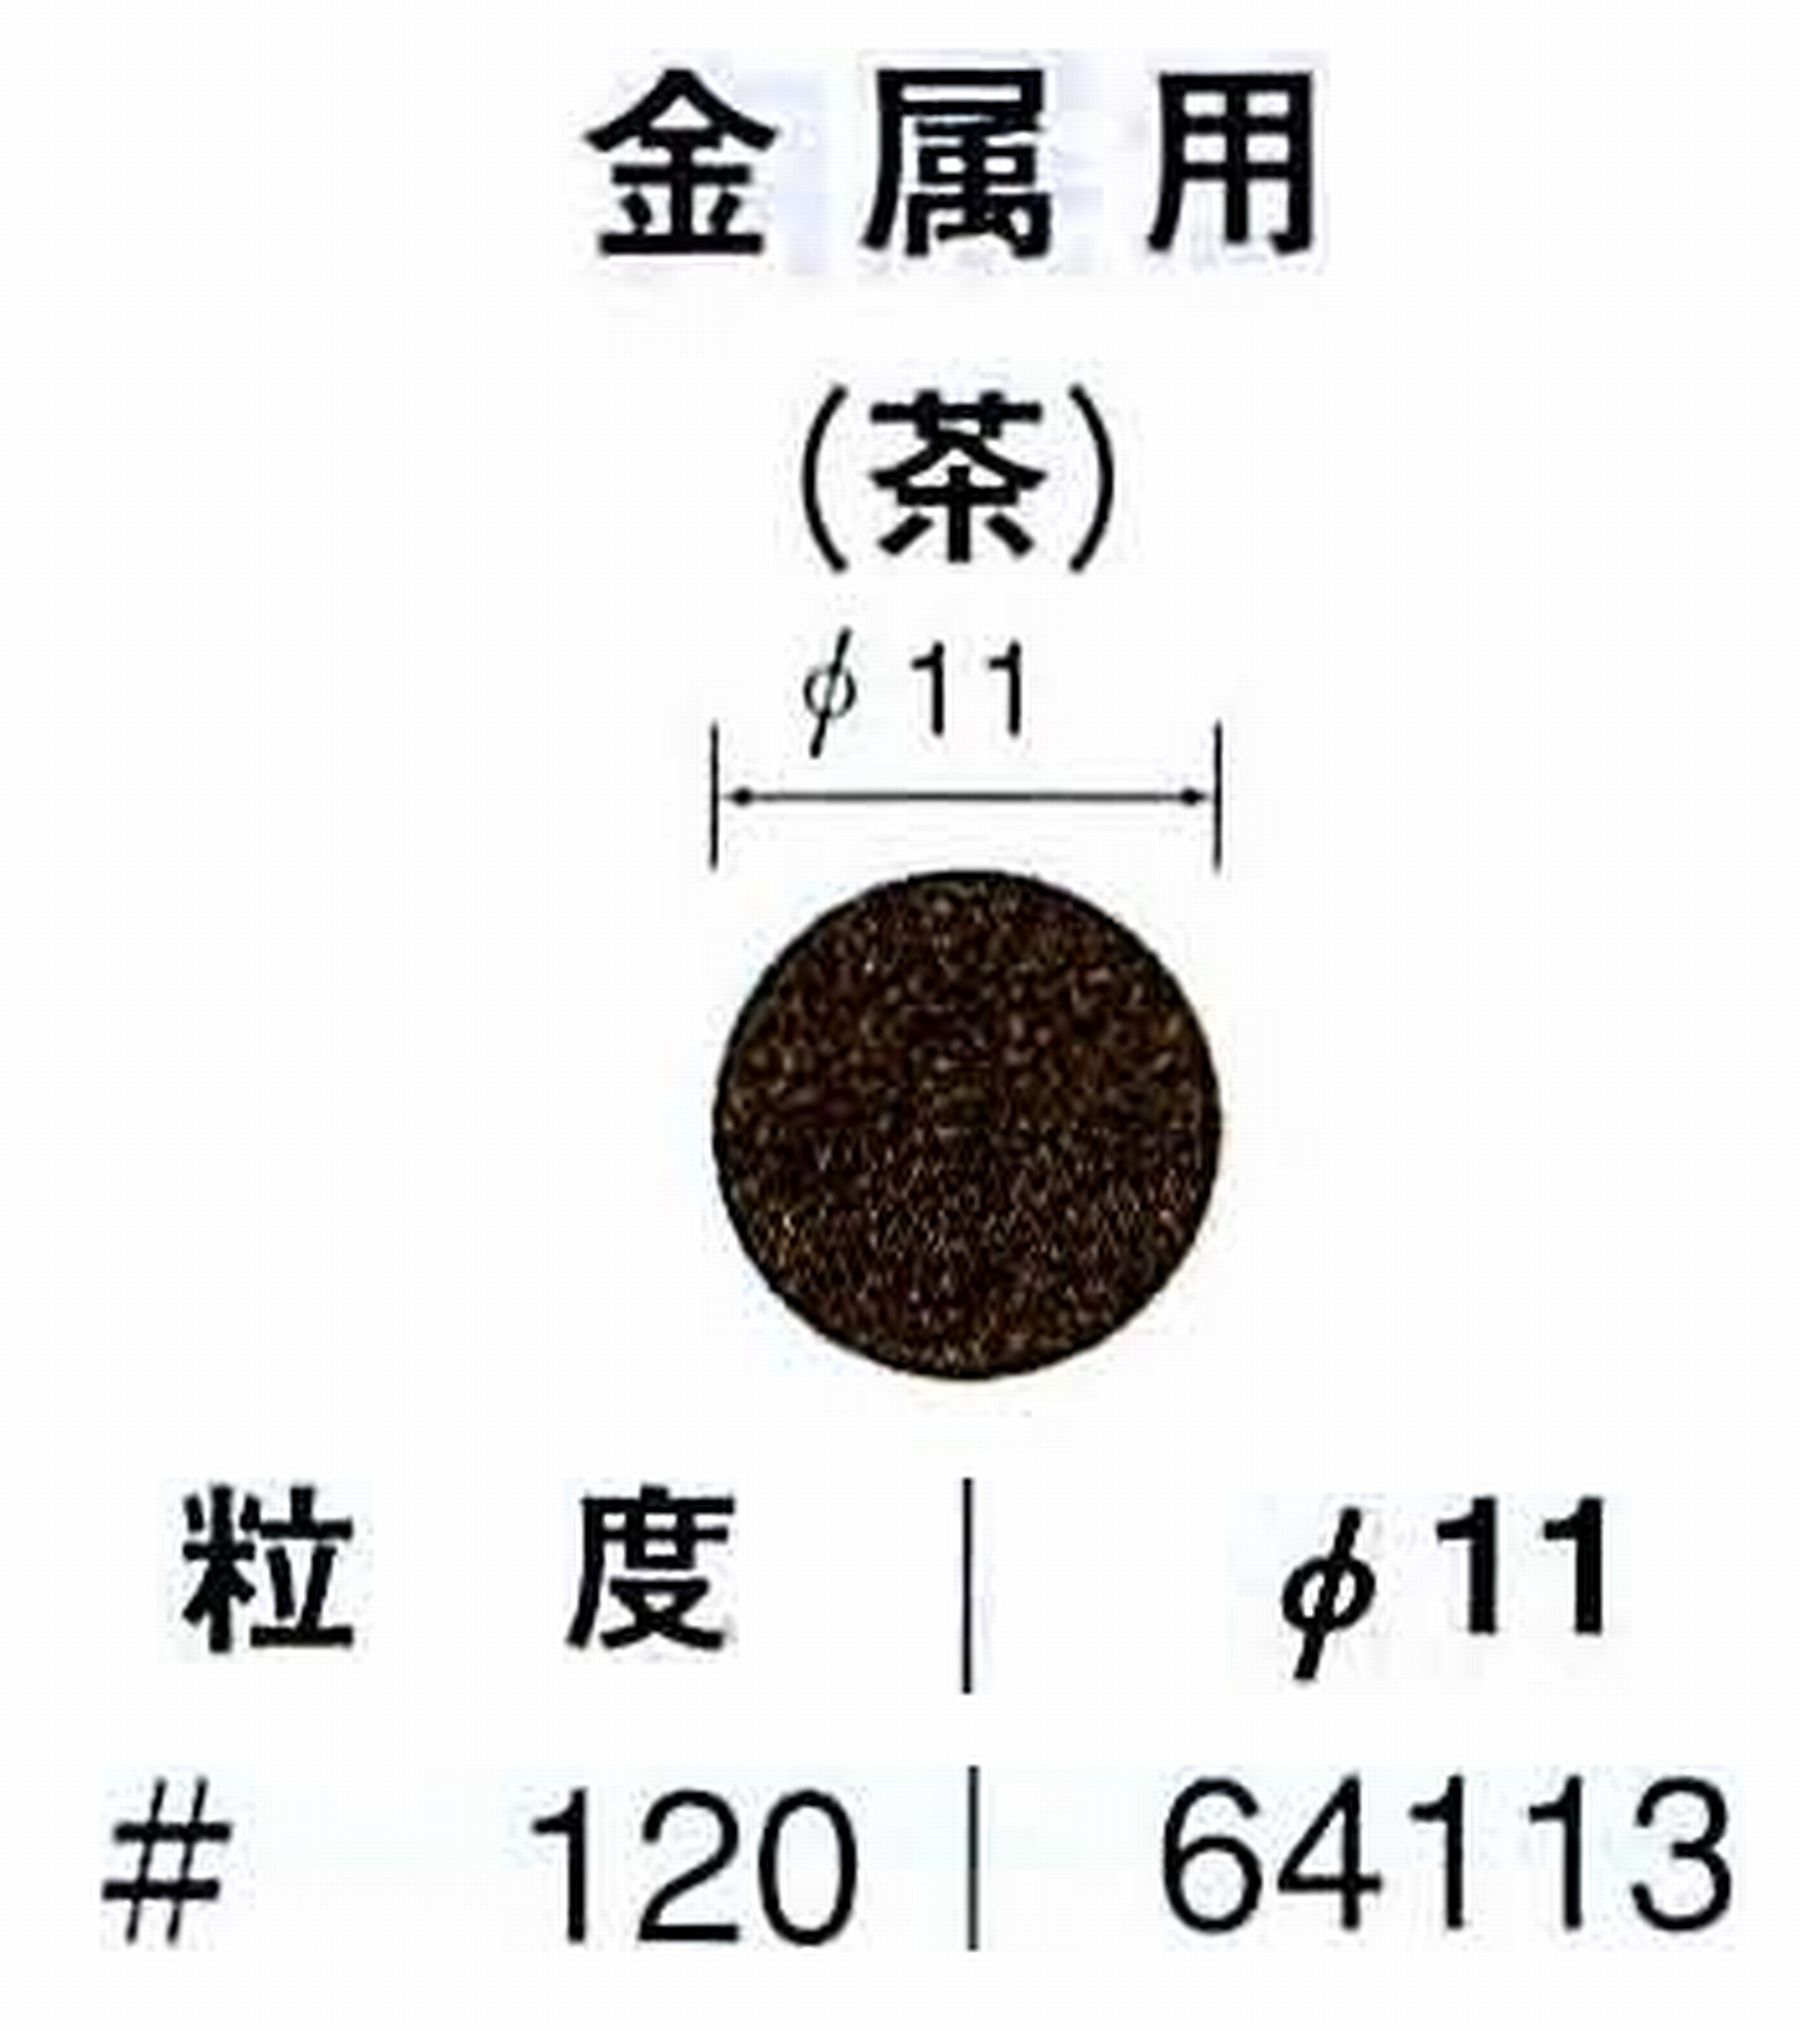 ナカニシ/NAKANISHI アングルグラインダ(電動・エアー) アングルアタッチメント専用工具 サンドペーパーディスク(布基材タイプ)裏面のり処理 64113